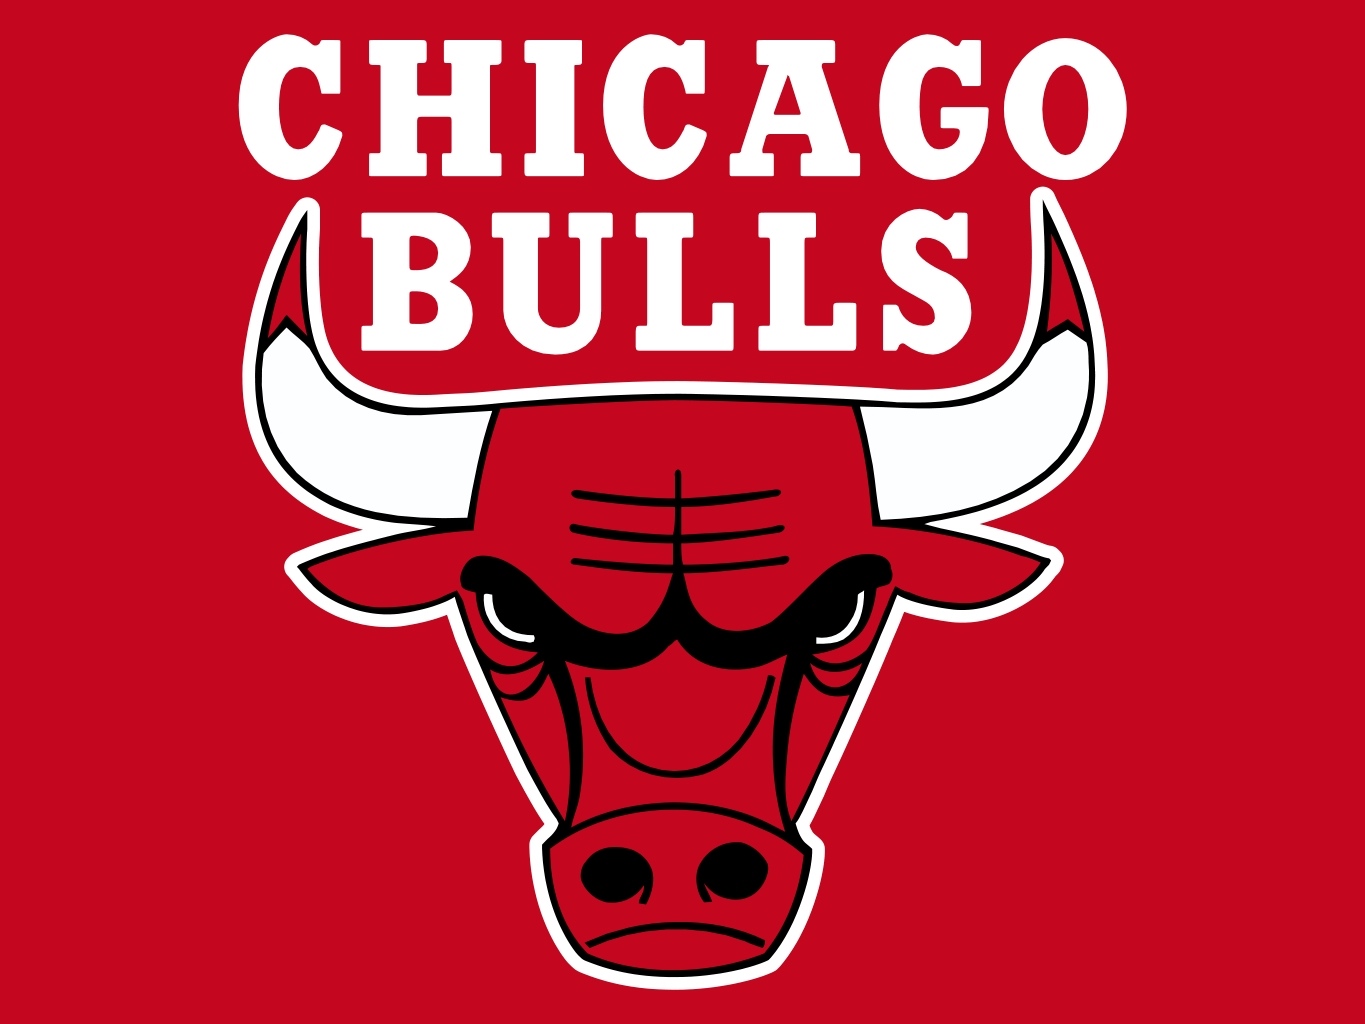 Chicago Bulls | Major League Sports Wiki | FANDOM powered by Wikia